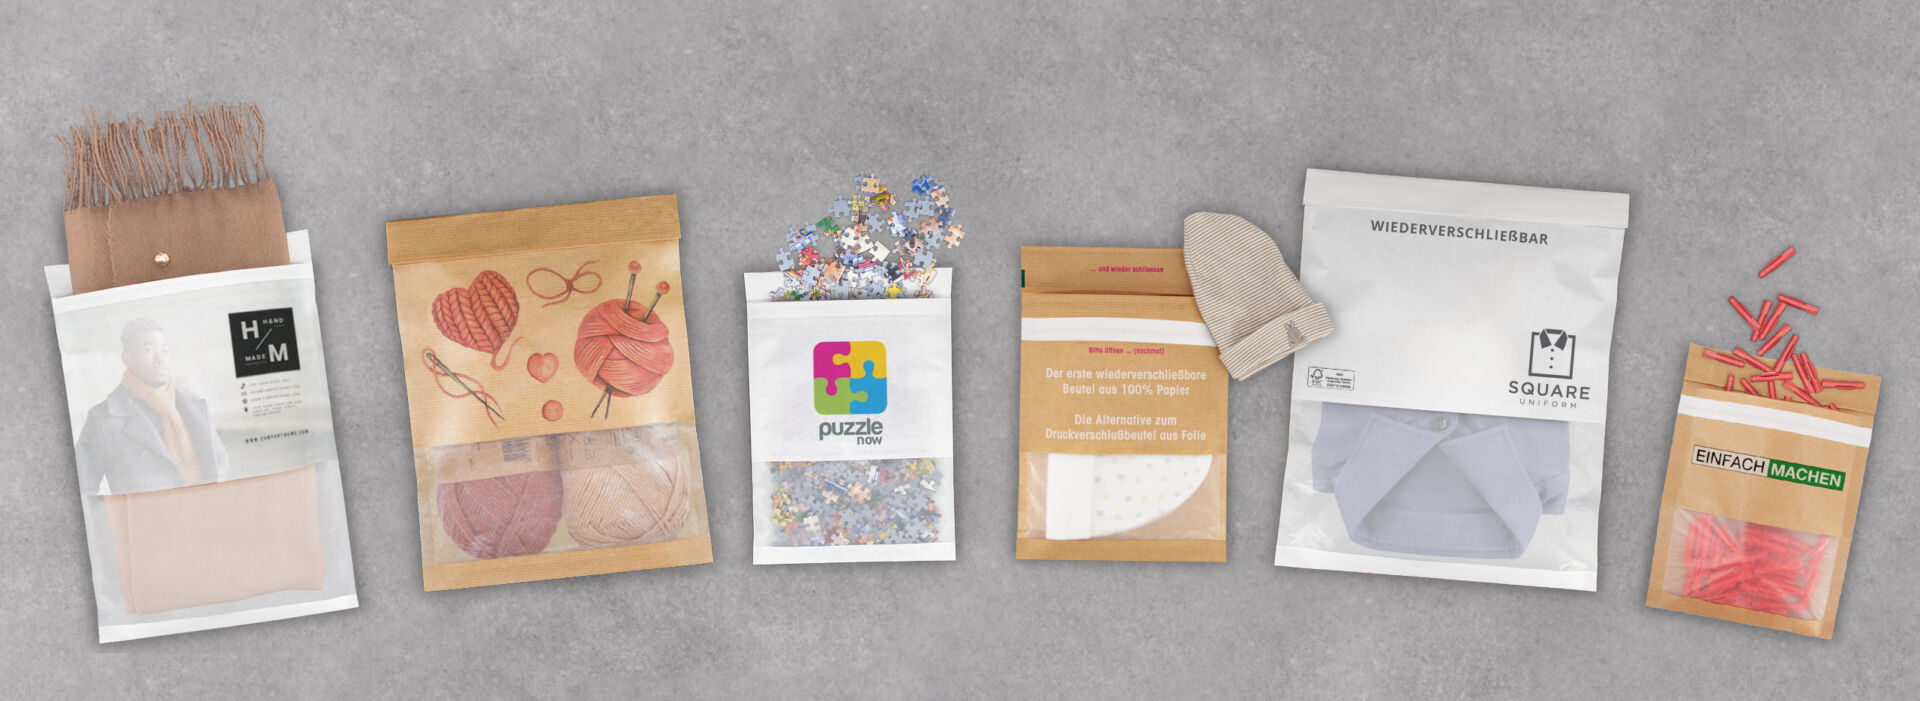 reLoc Bag - wiederverschließbare Beutel aus Papier - von WEBER Verpackungen